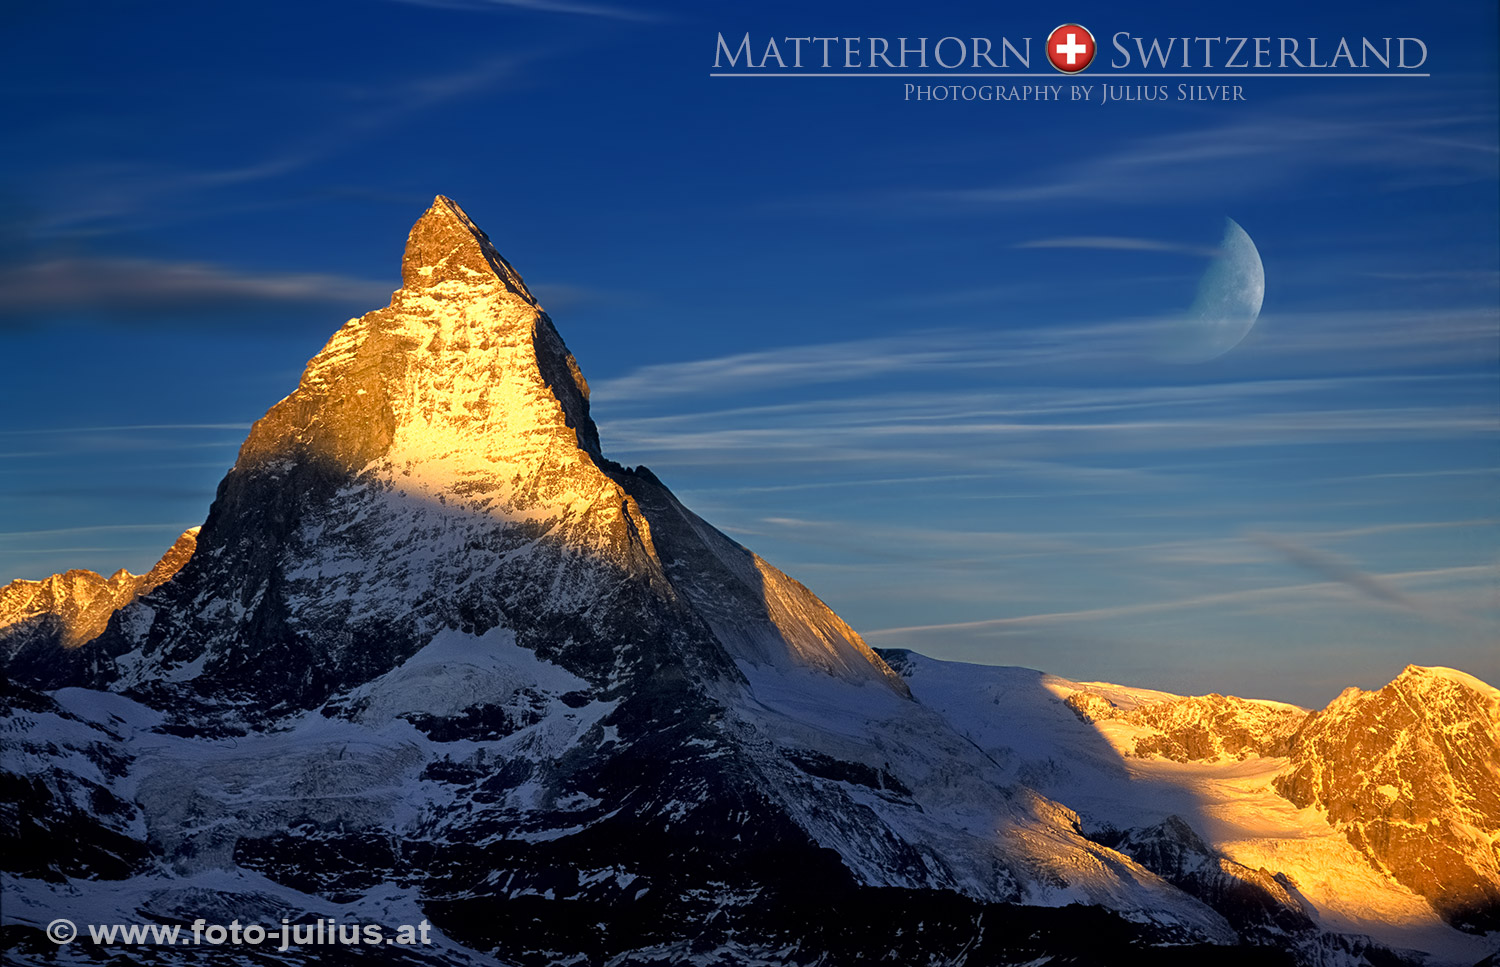 swiss004a_Matterhorn_Sunrice.jpg, 361kB